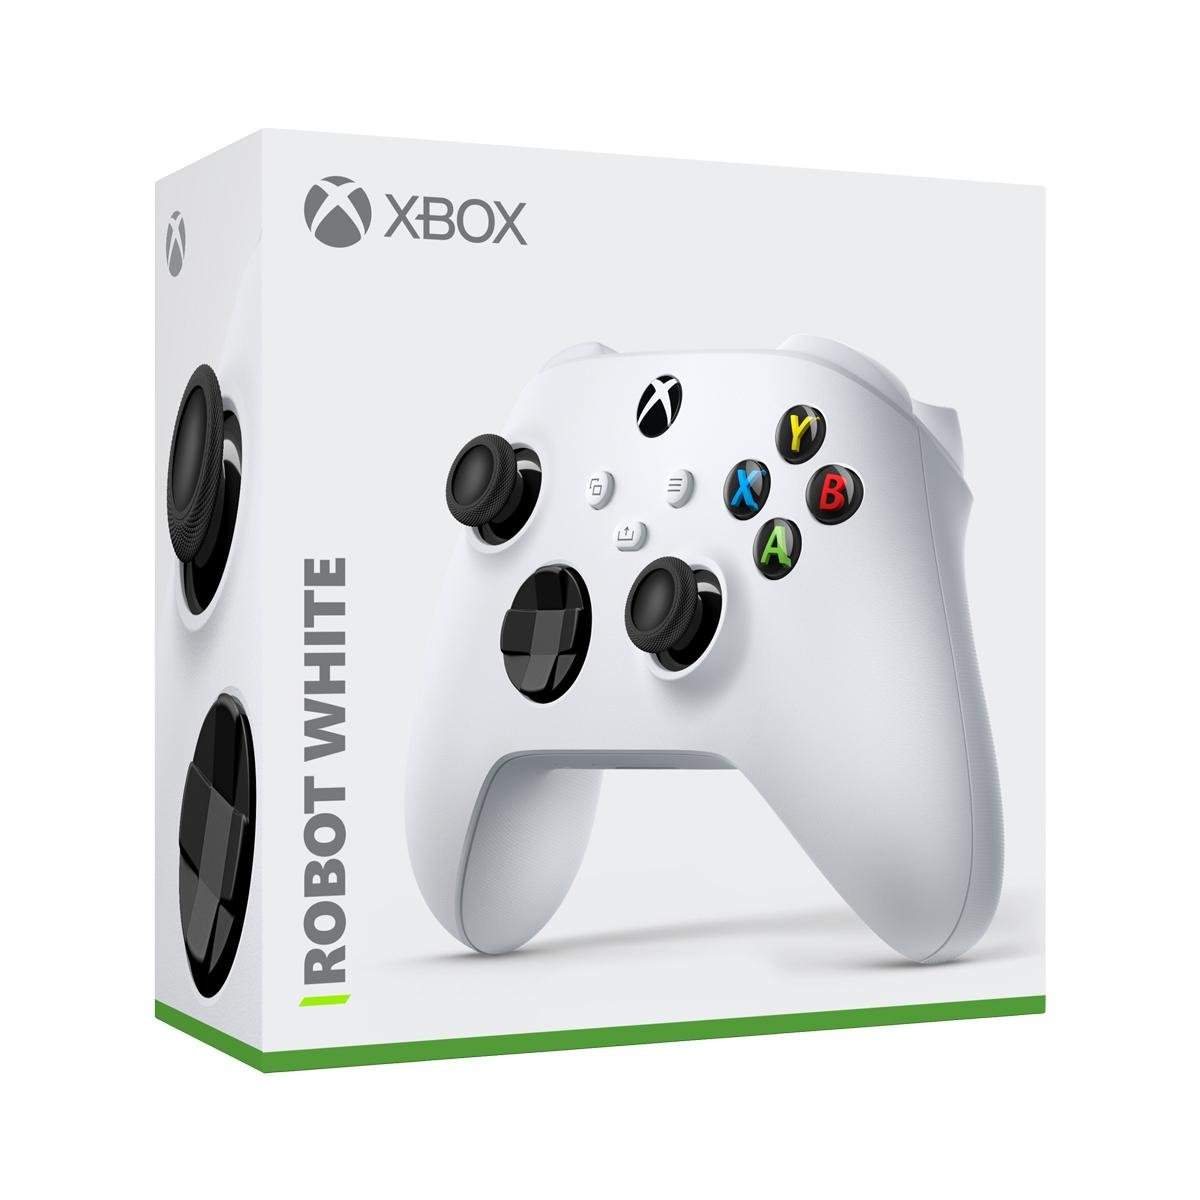 Controle Com Fio para Xbox 360 Slim Joystick Computador E Pc - Nelson Games